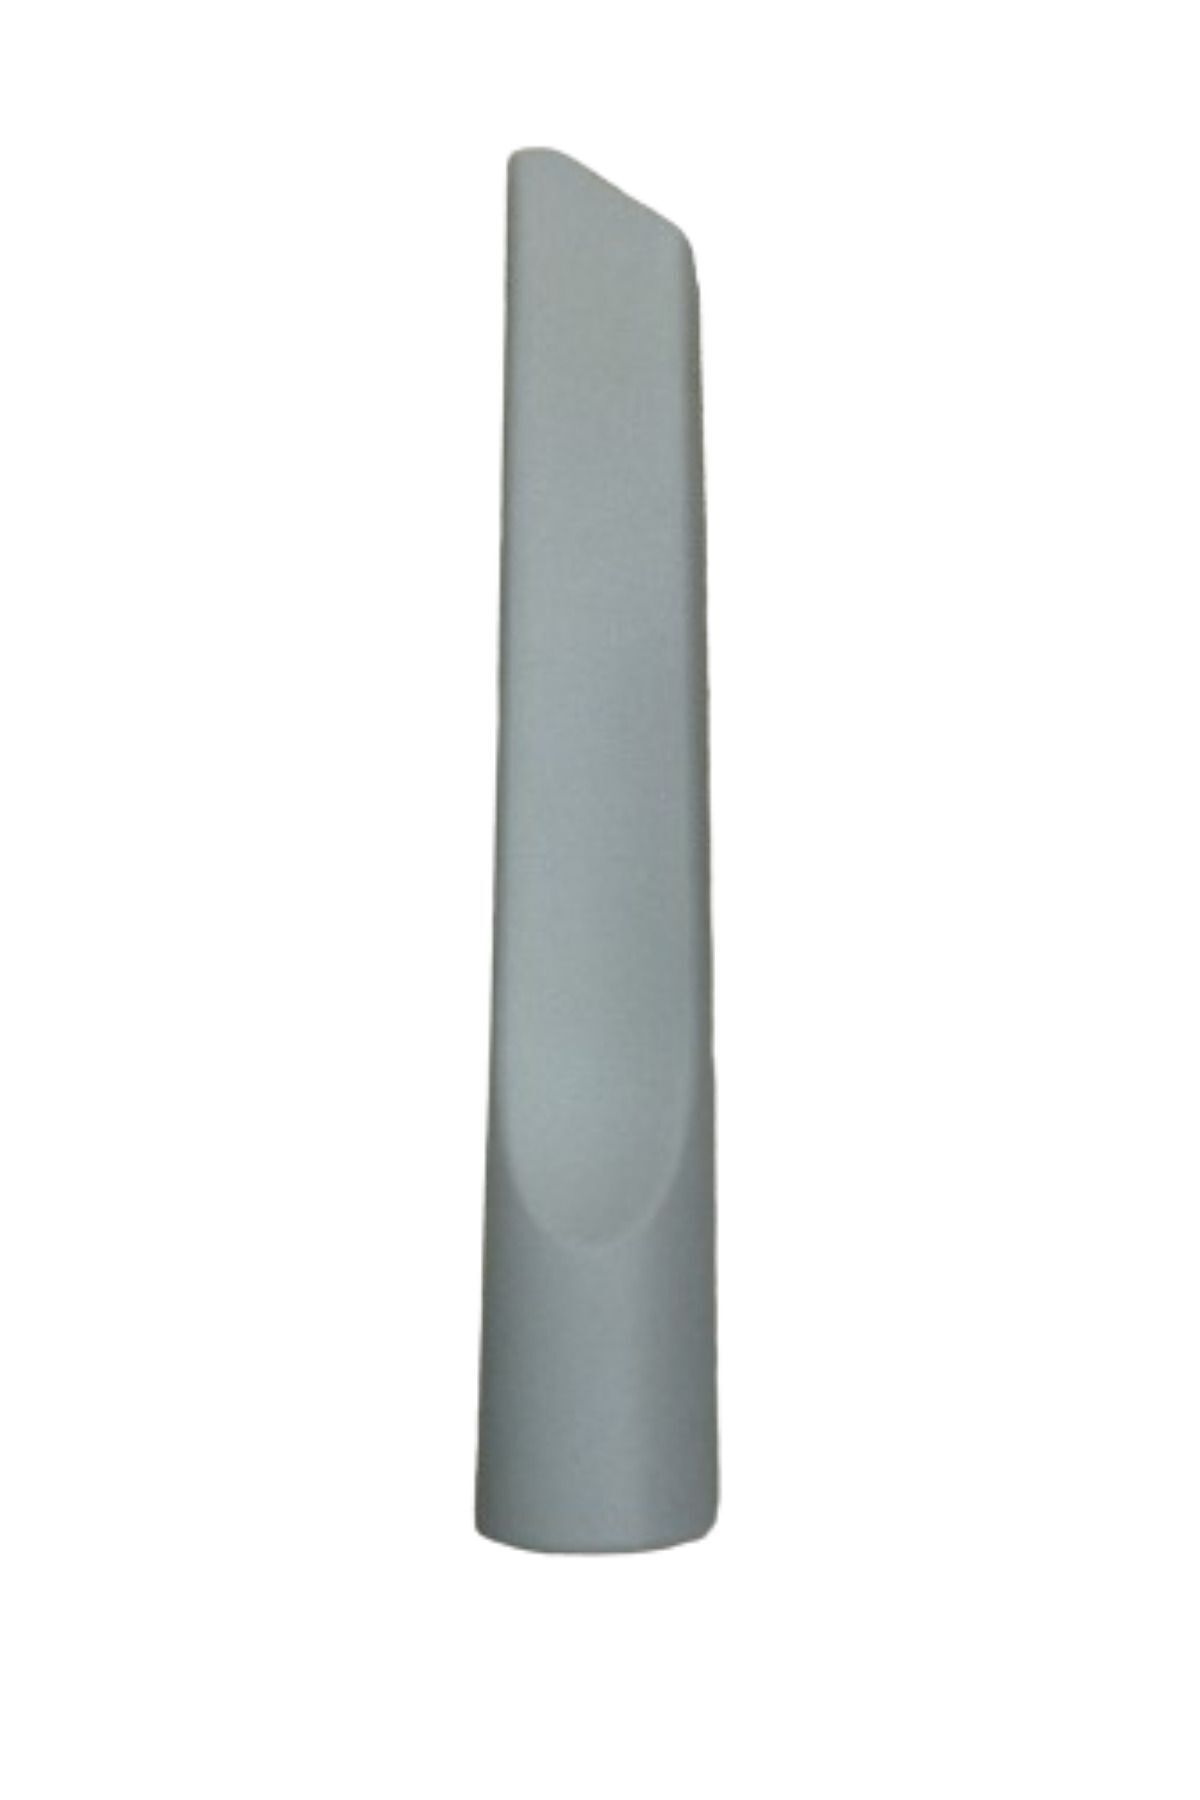 VESTEL Varia Süpürge Koltuk Arası Düz Emici Başlık Gri Renk(22,5 cm)